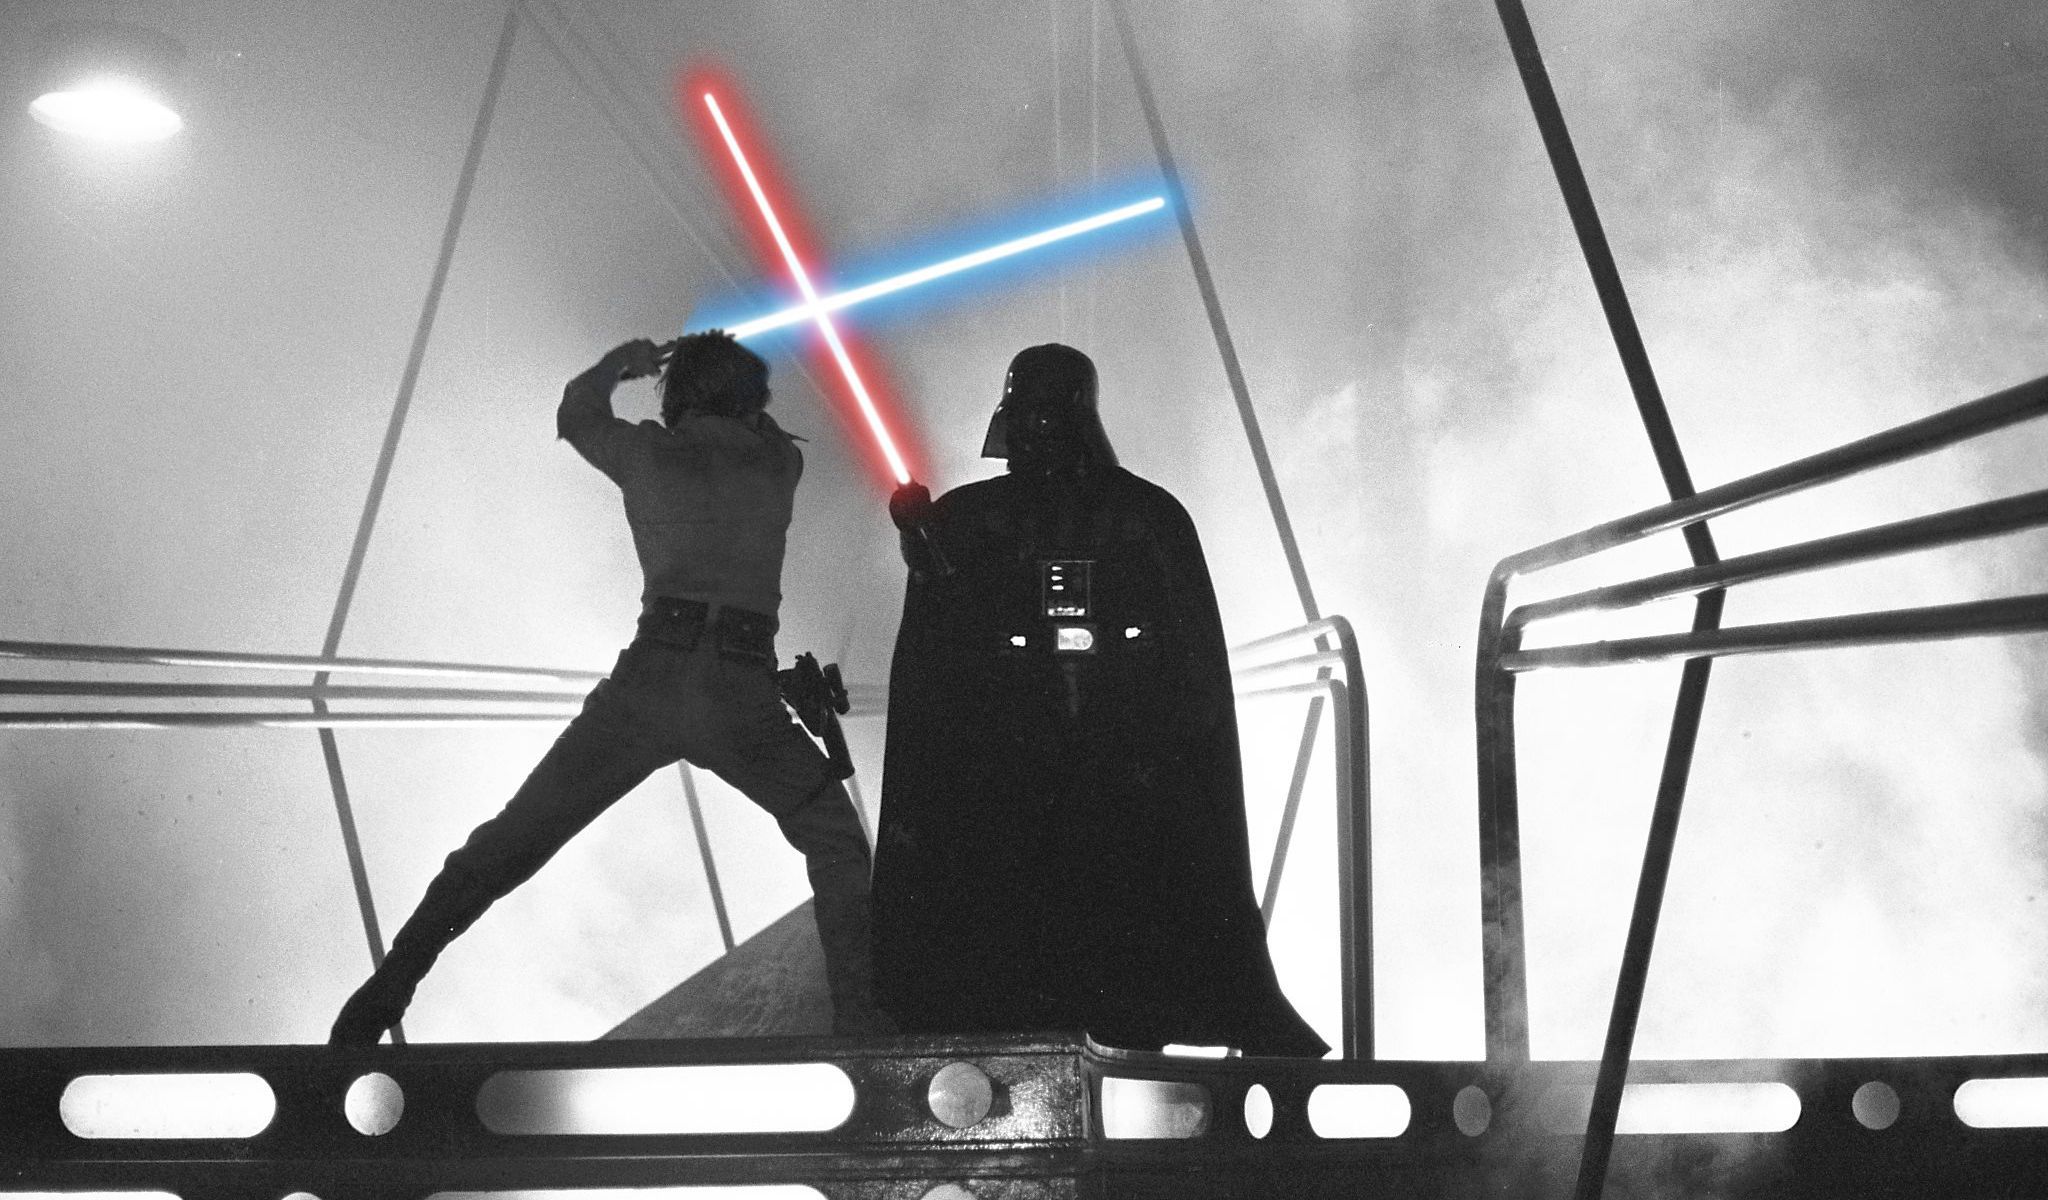 Star Wars Luke Skywalker vs Darth Vader